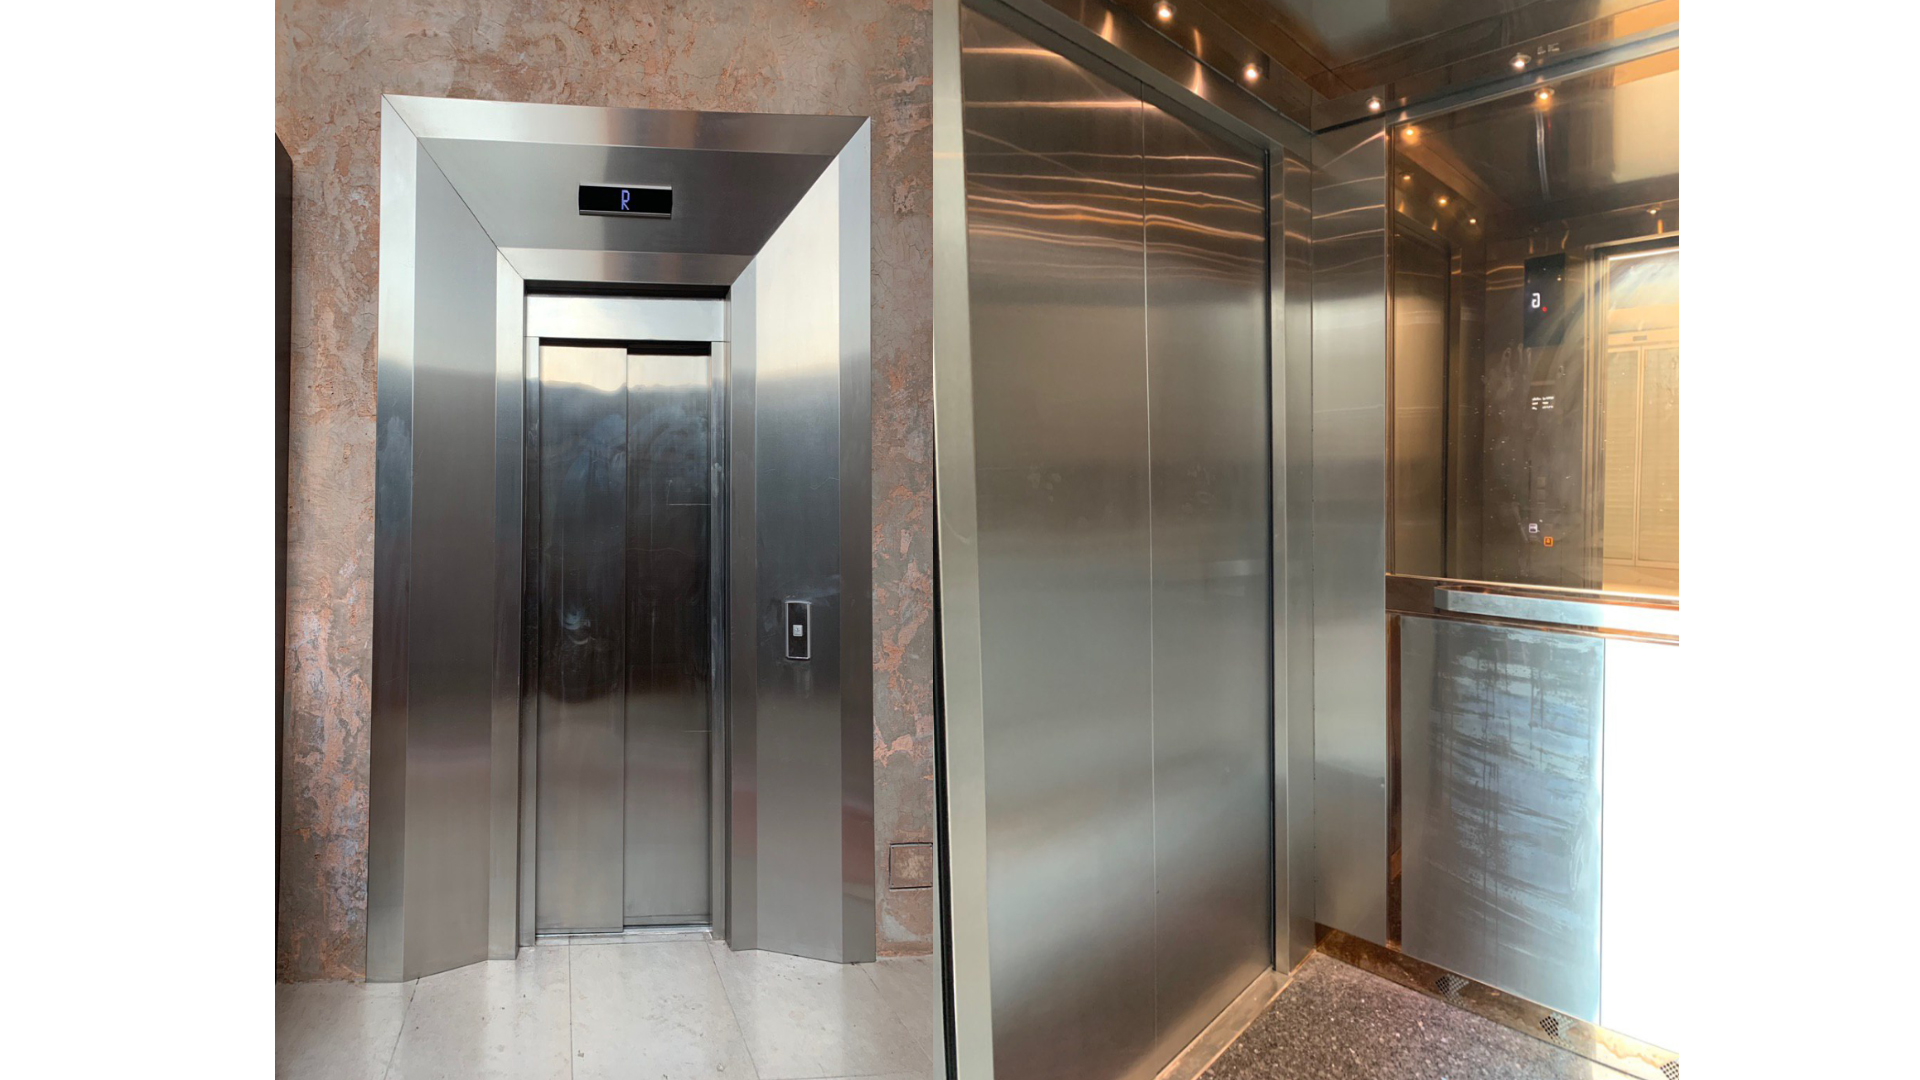 آسانسور های تجاری یورو پک شرکت آسانسور و پله برقی روان پارس در پروژه پنو